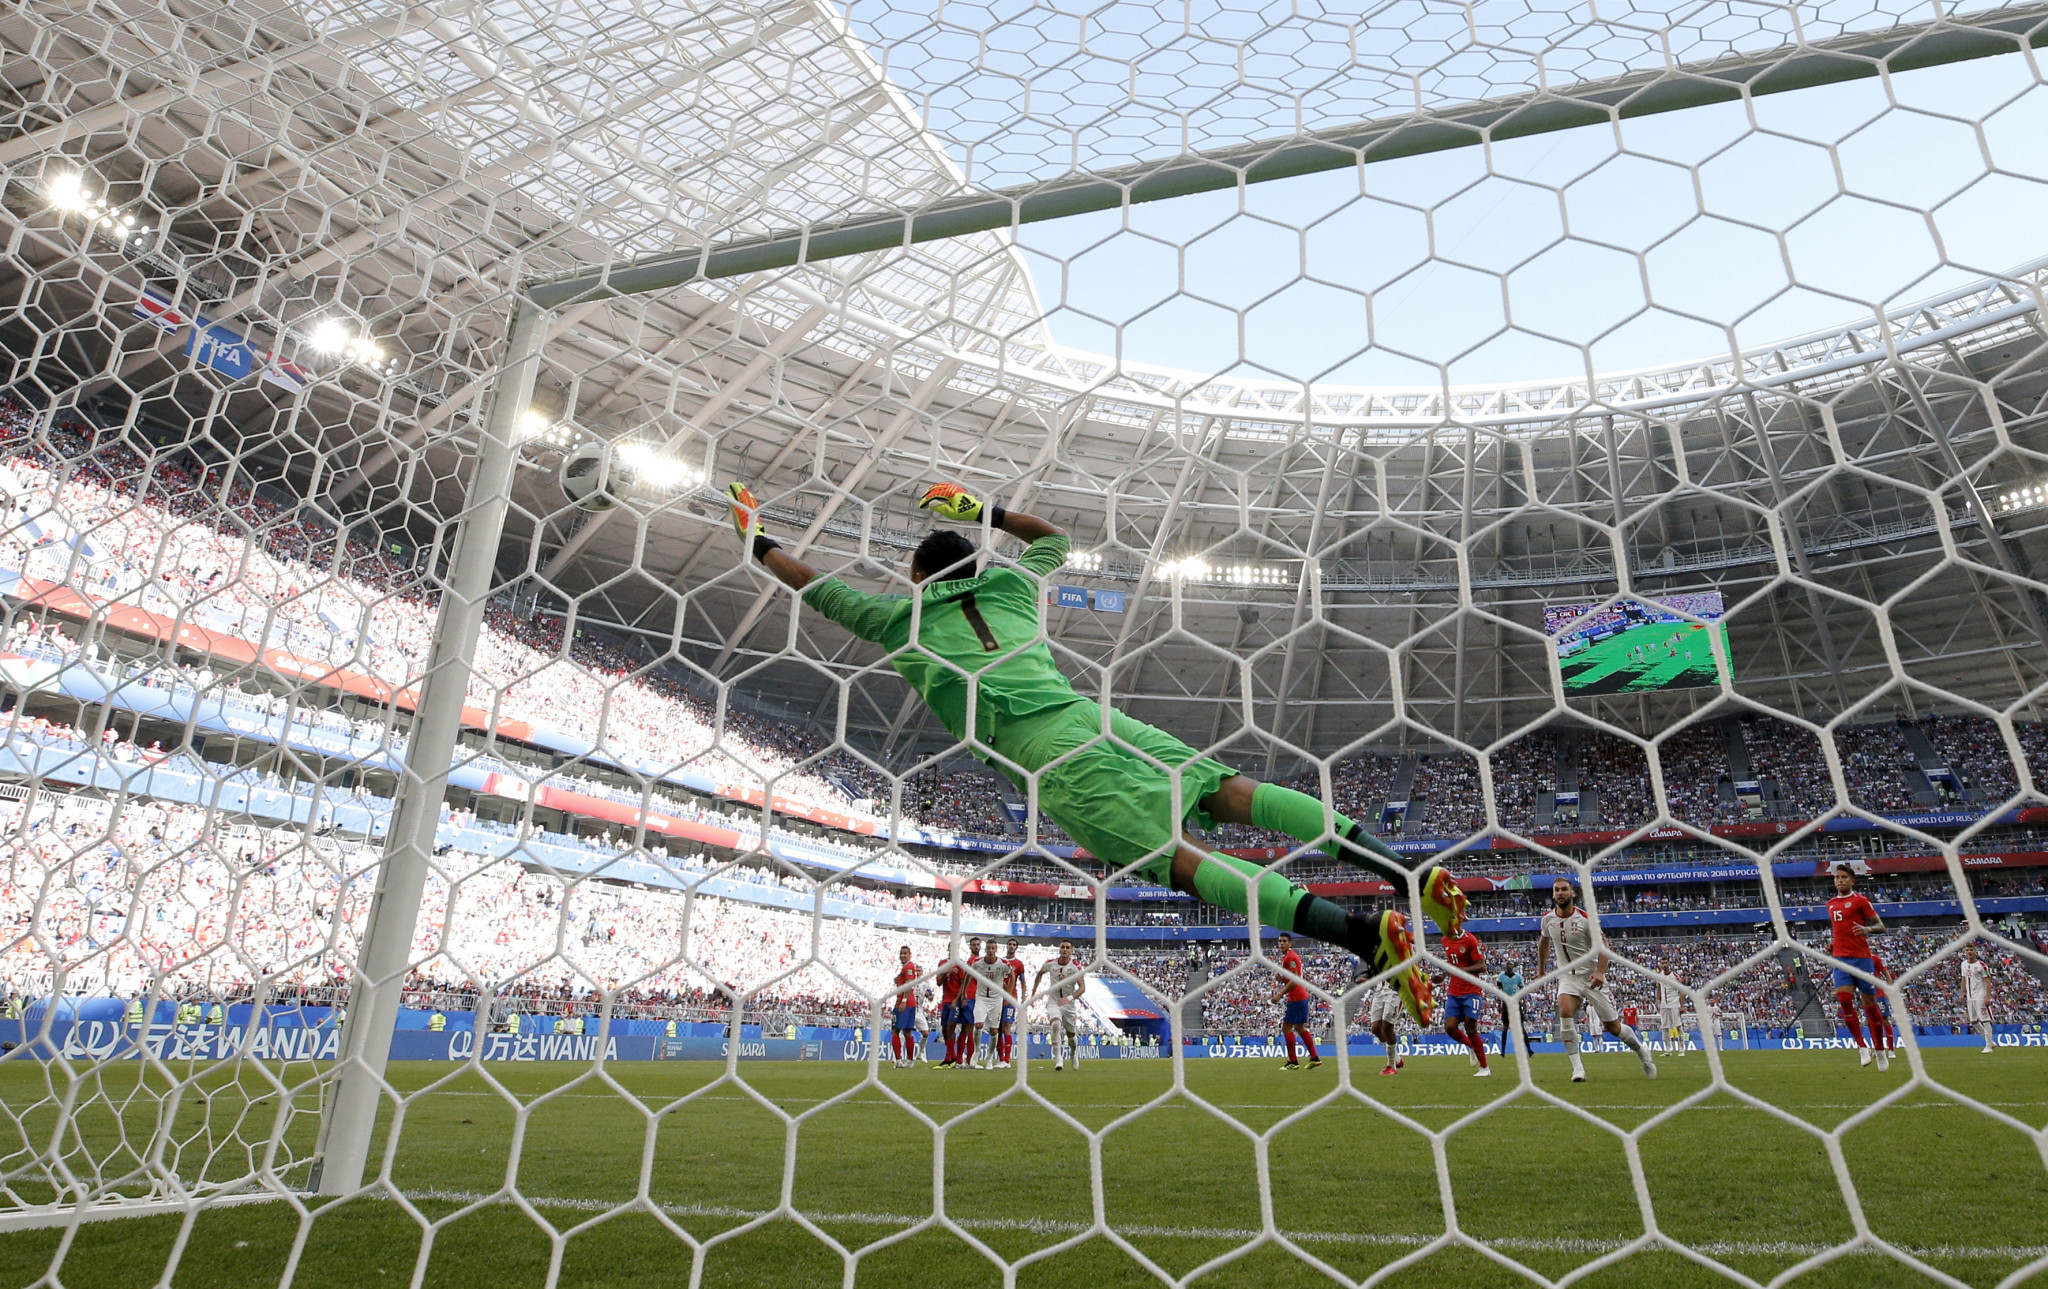 A superb strike from Aleksandar Kolarov gave Serbia victory over Costa Rica ©Getty Images